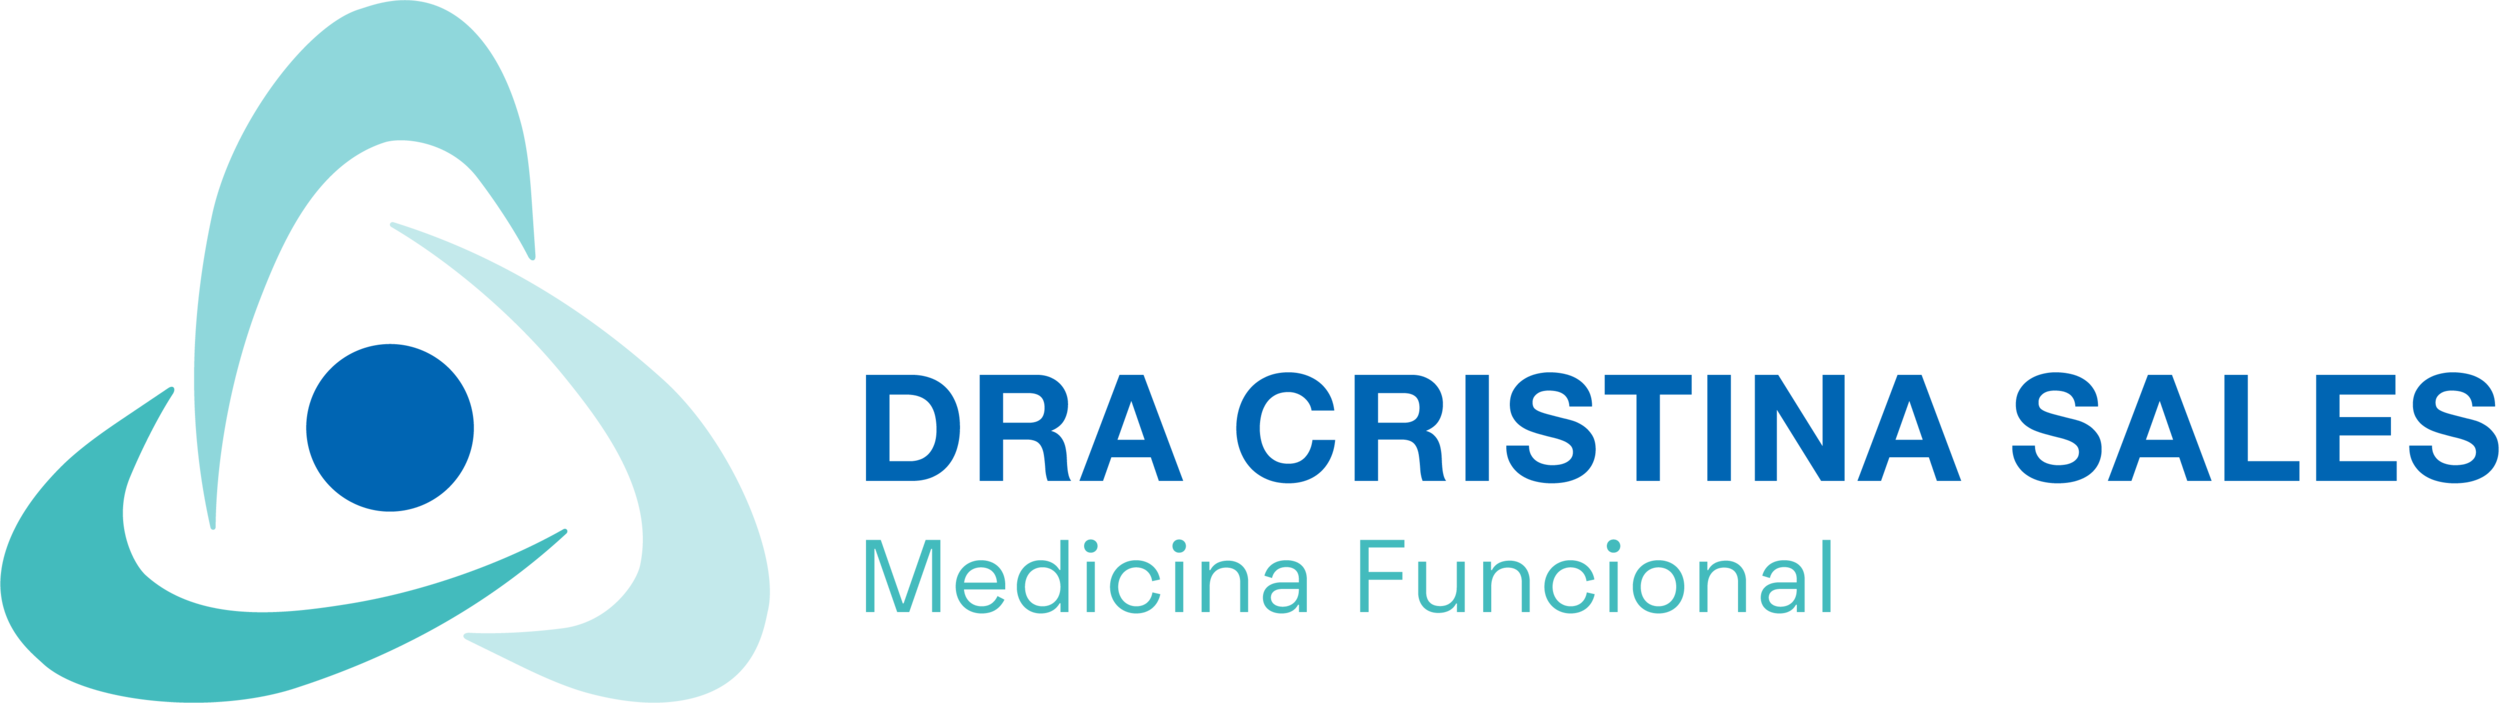 CristinaSales-logo-03.png